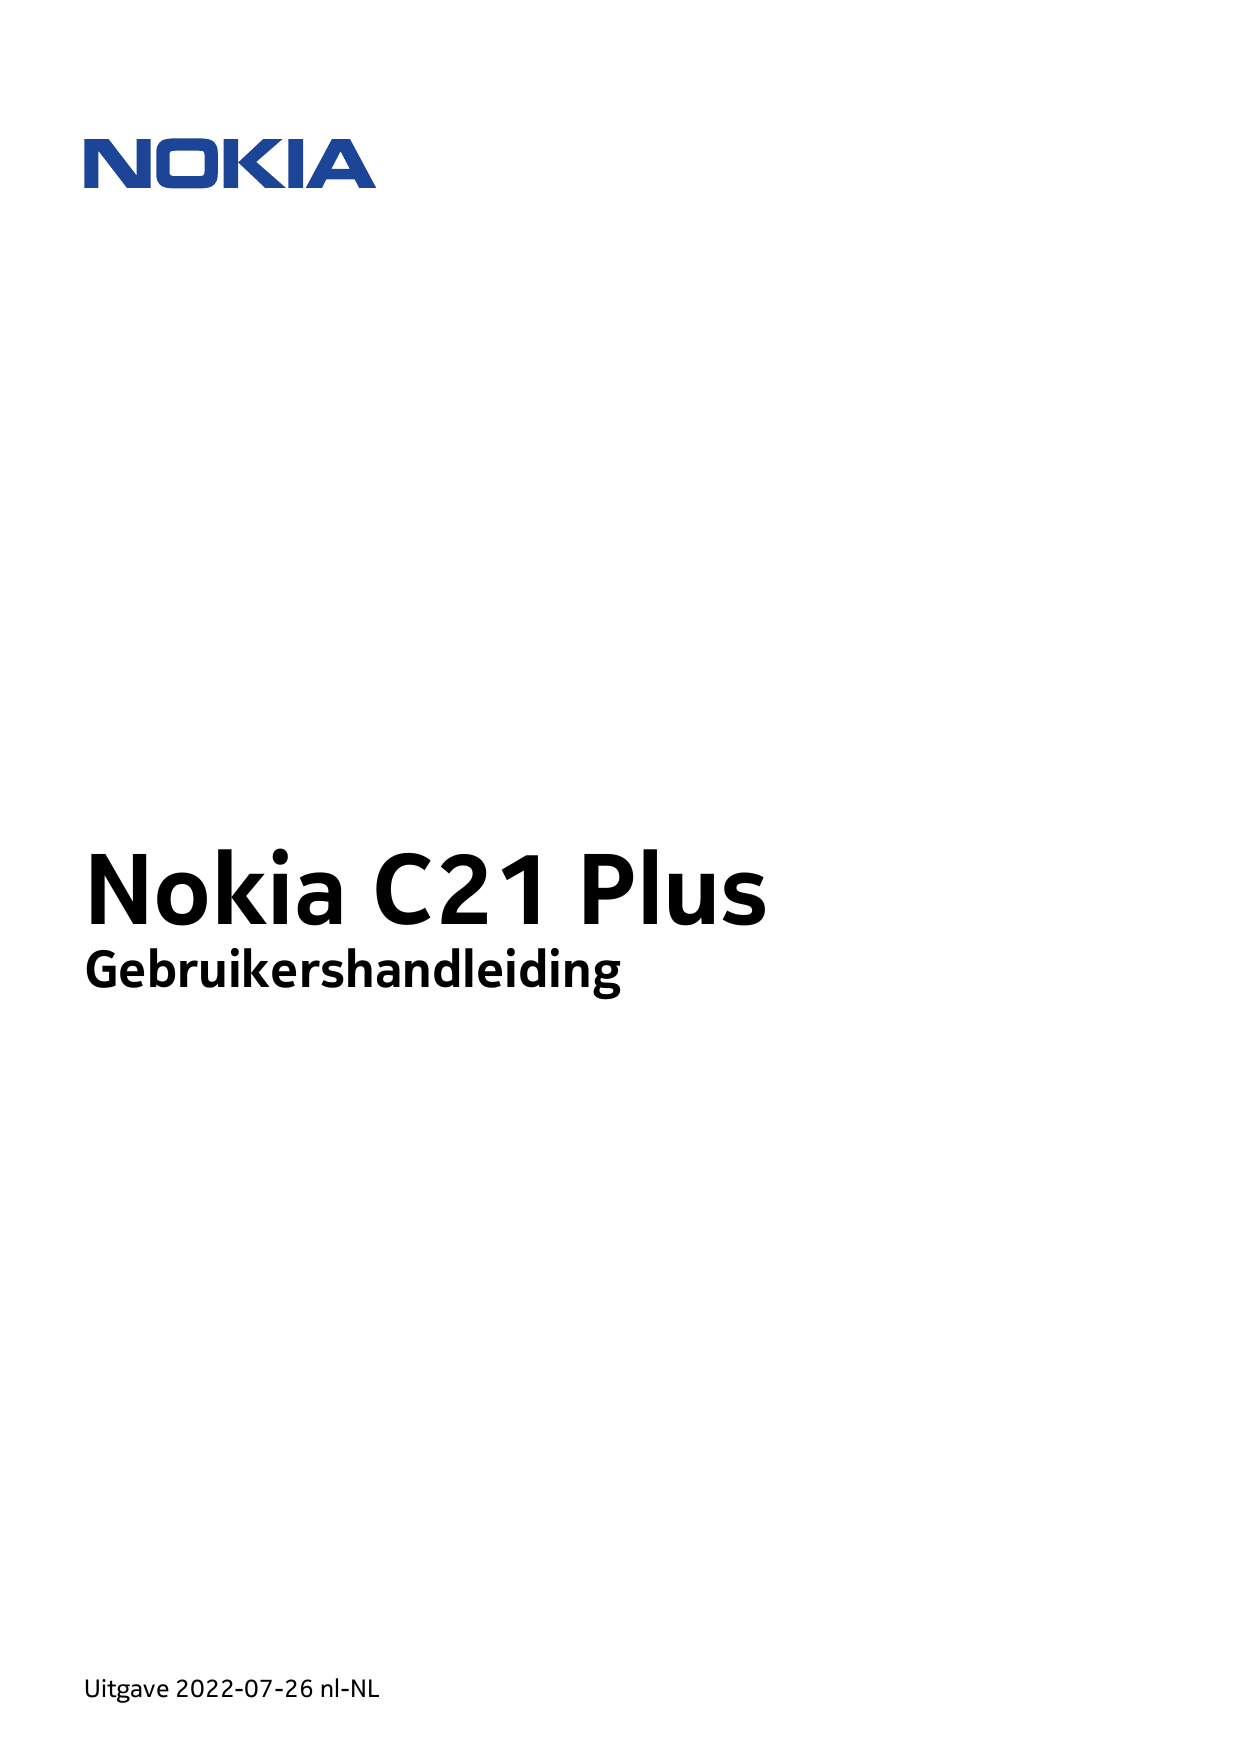 Nokia C21 PlusGebruikershandleidingUitgave 2022-07-26 nl-NL